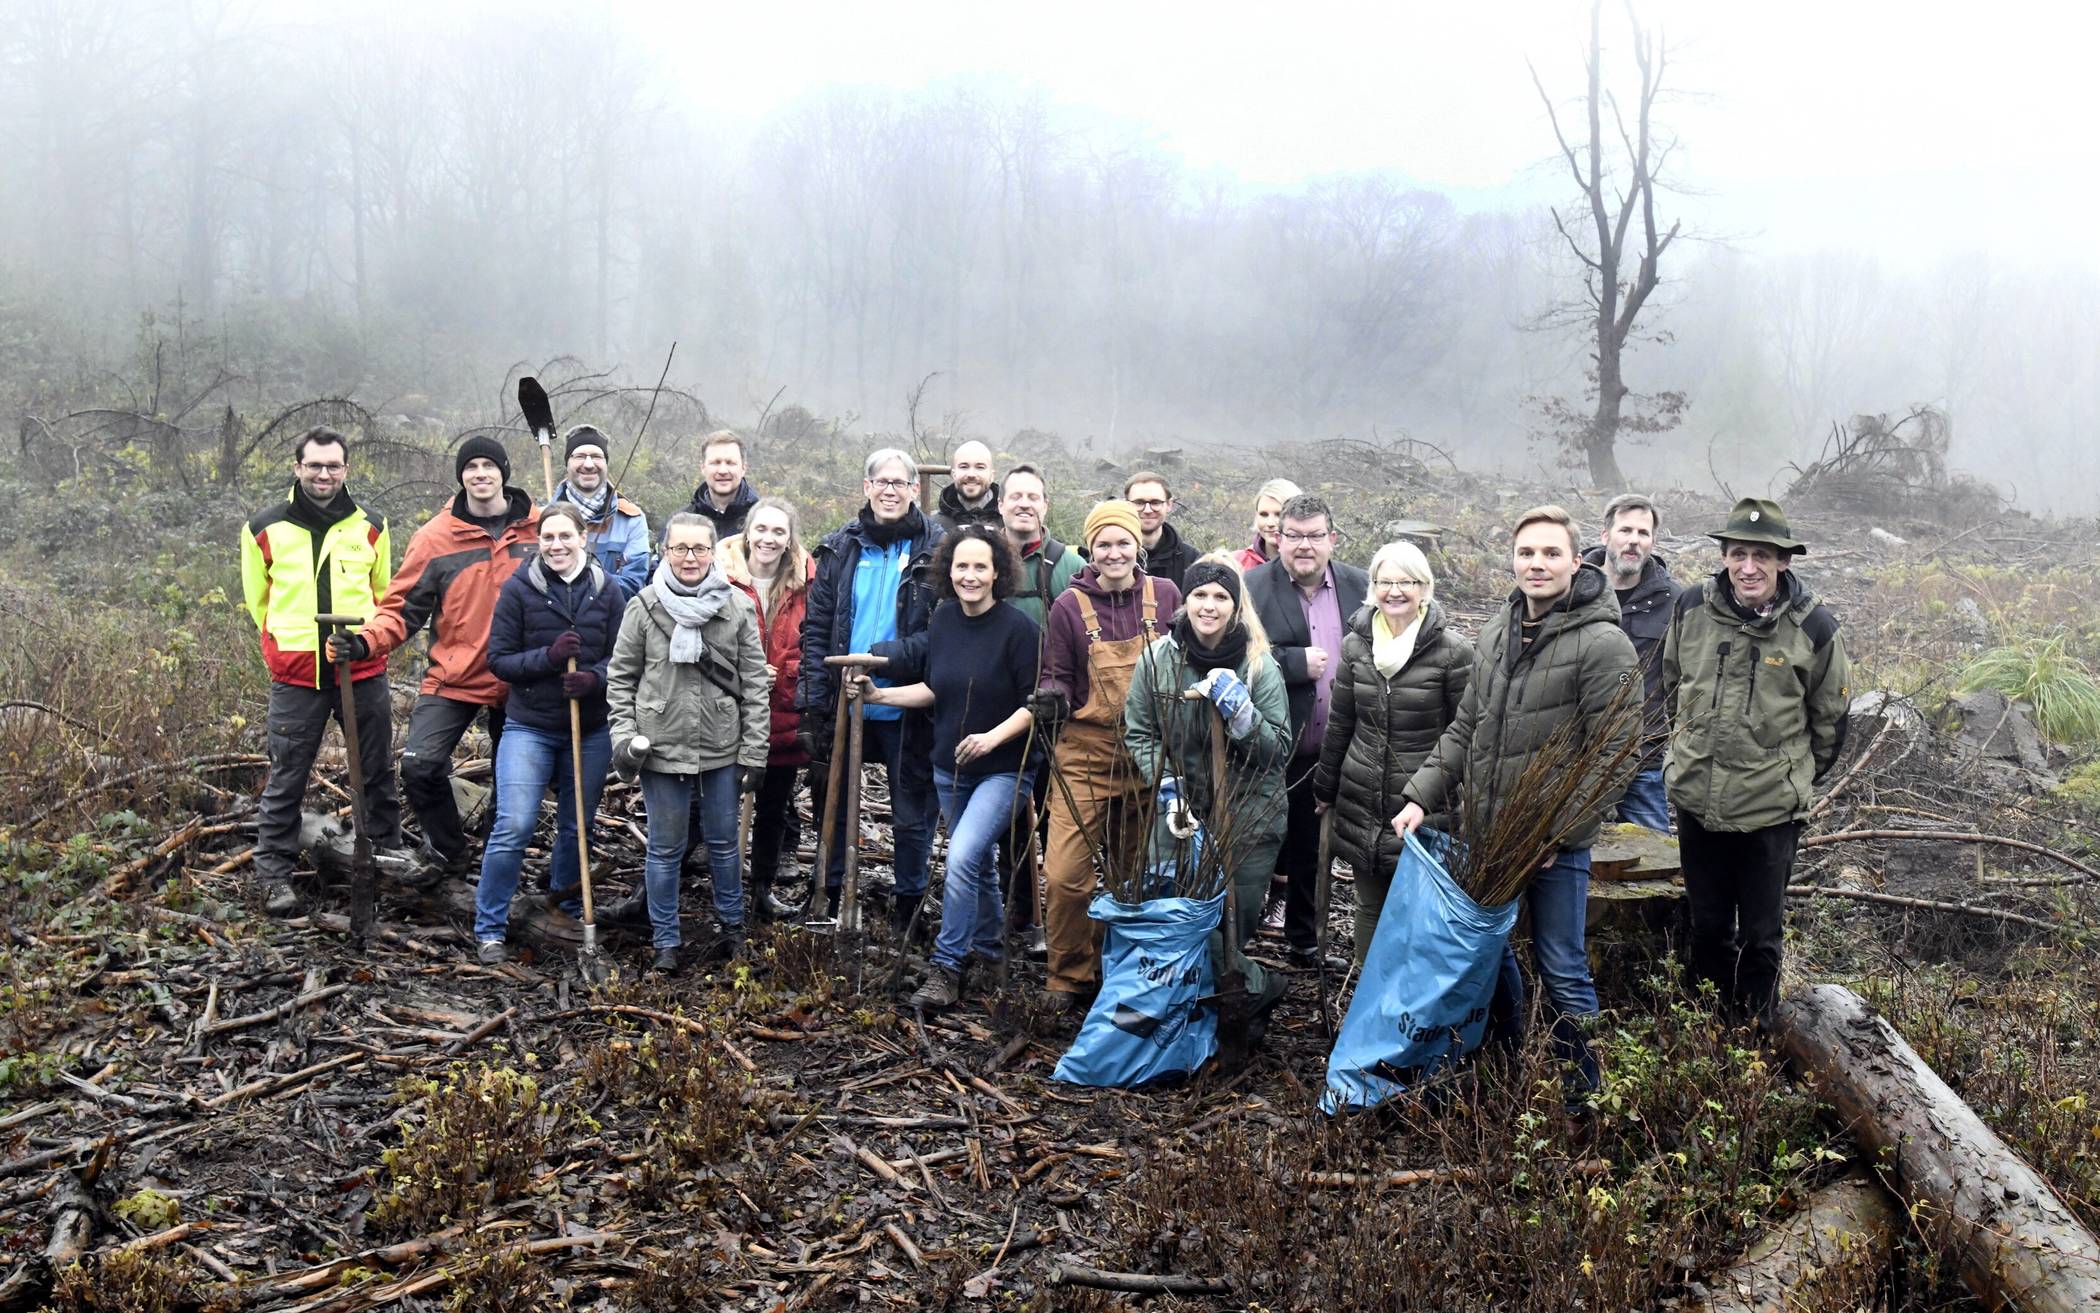  Mitglieder des Nachhaltigkeitsnetzwerks bei der Pflanzaktion im abgestorbenen Fichtenwald an der Ronsdorfer Talsperre.    